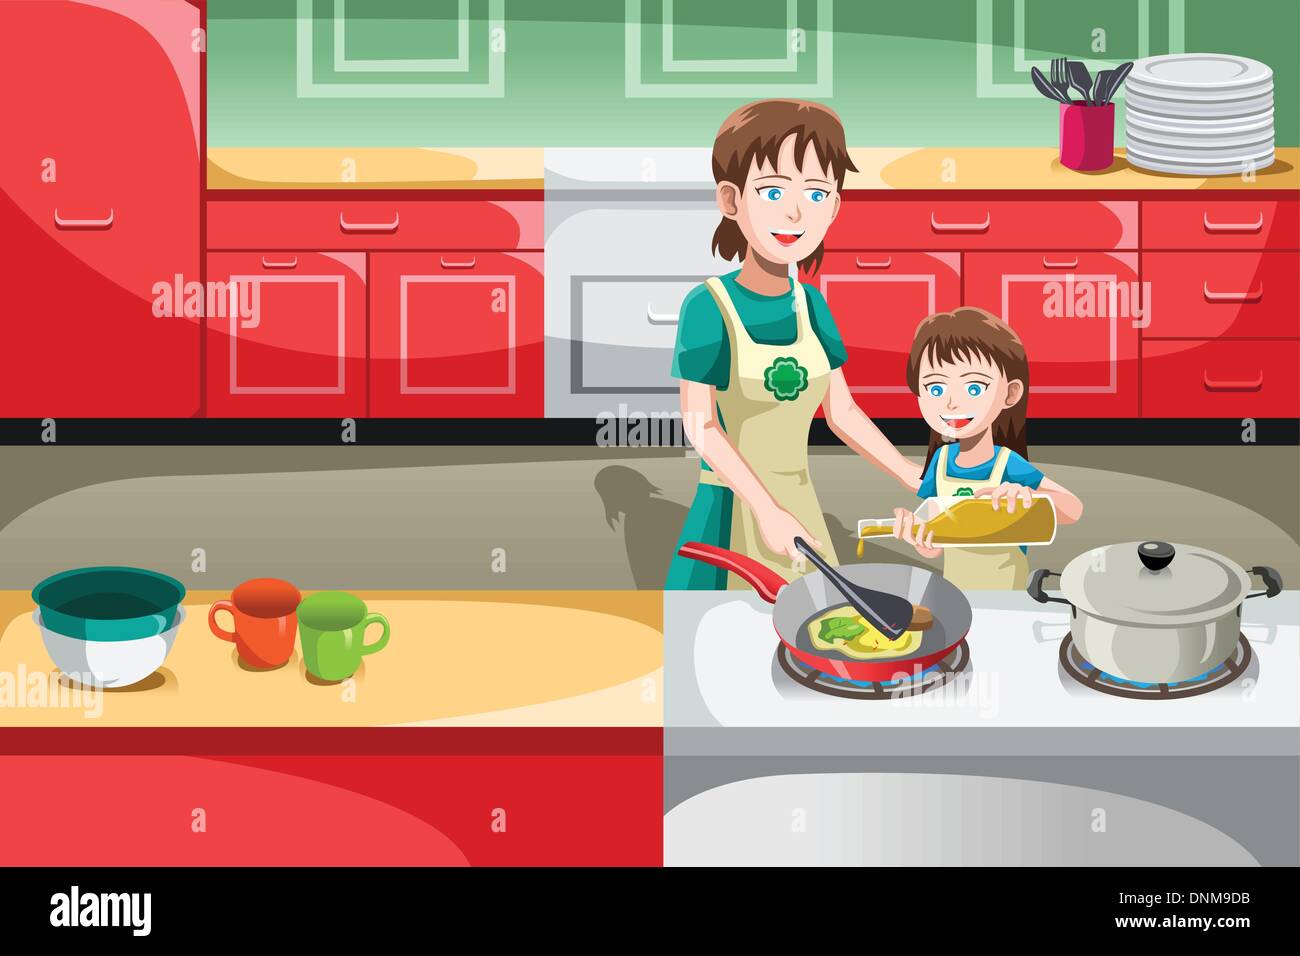 Un vecteur illustration de la mère et sa fille la cuisson dans la cuisine Illustration de Vecteur